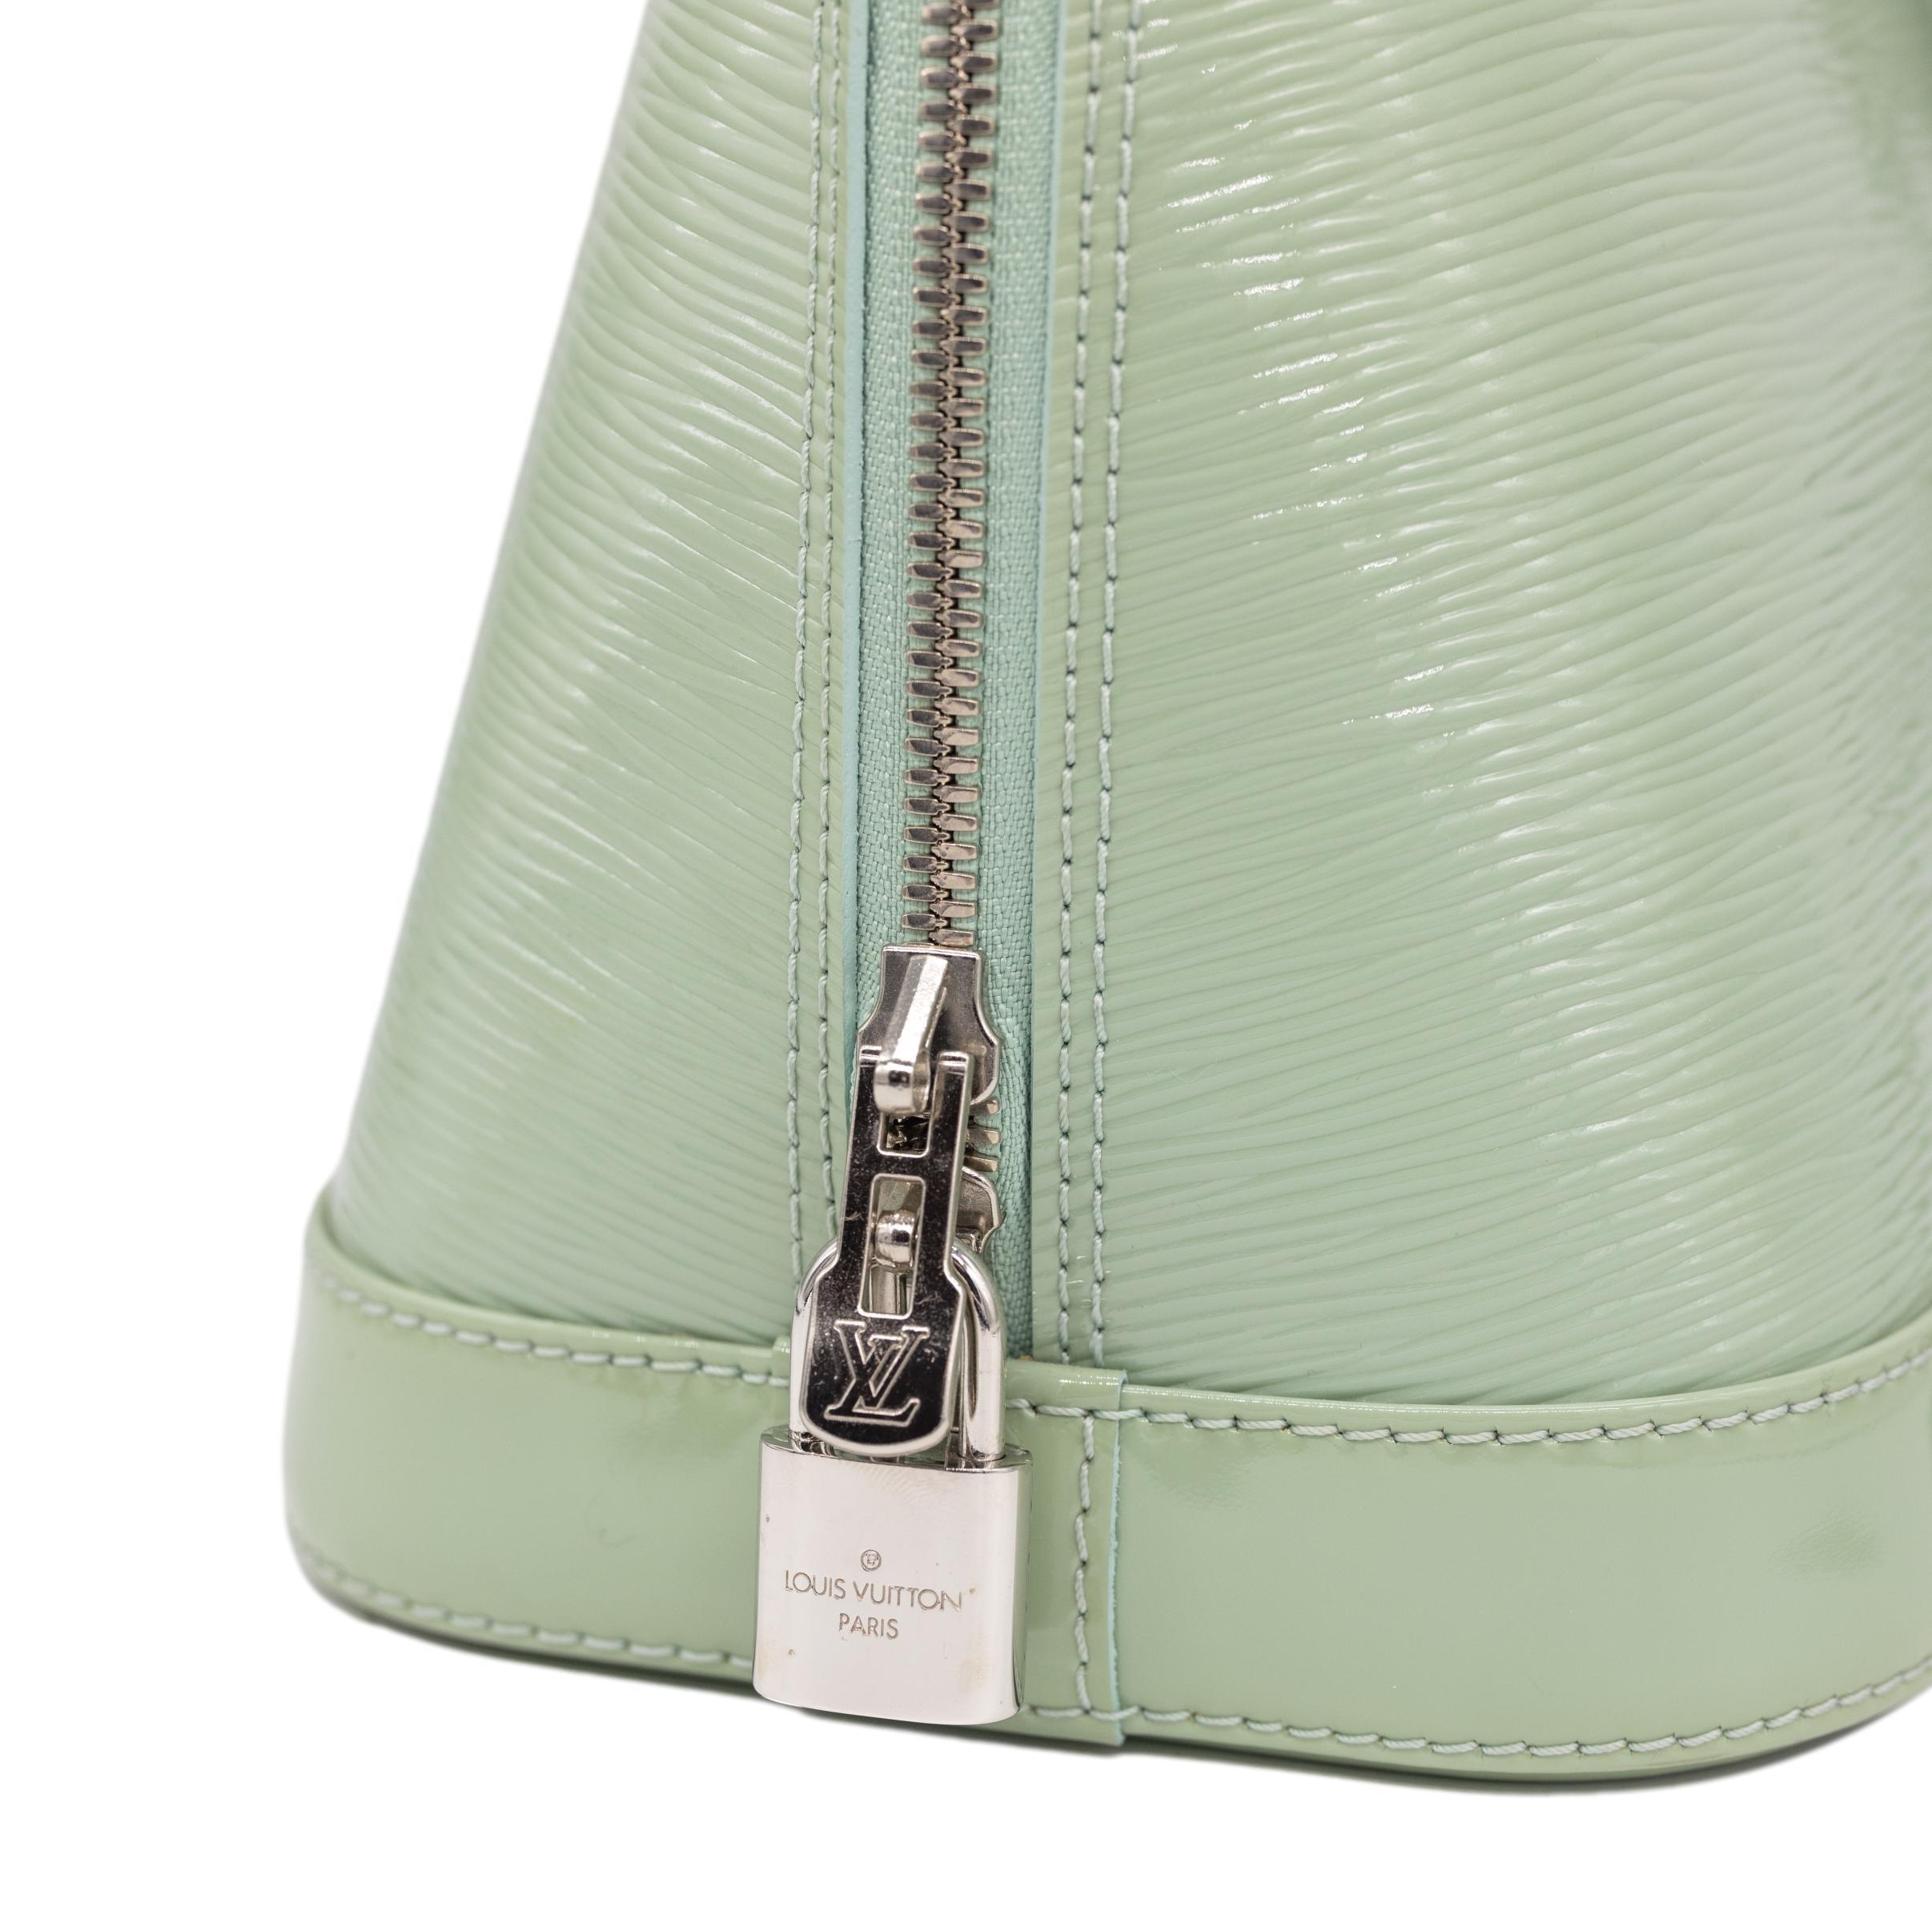 Women's or Men's Louis Vuitton Amande EPI Vernis Leather Alma PM Top Handle Bag, 2014.